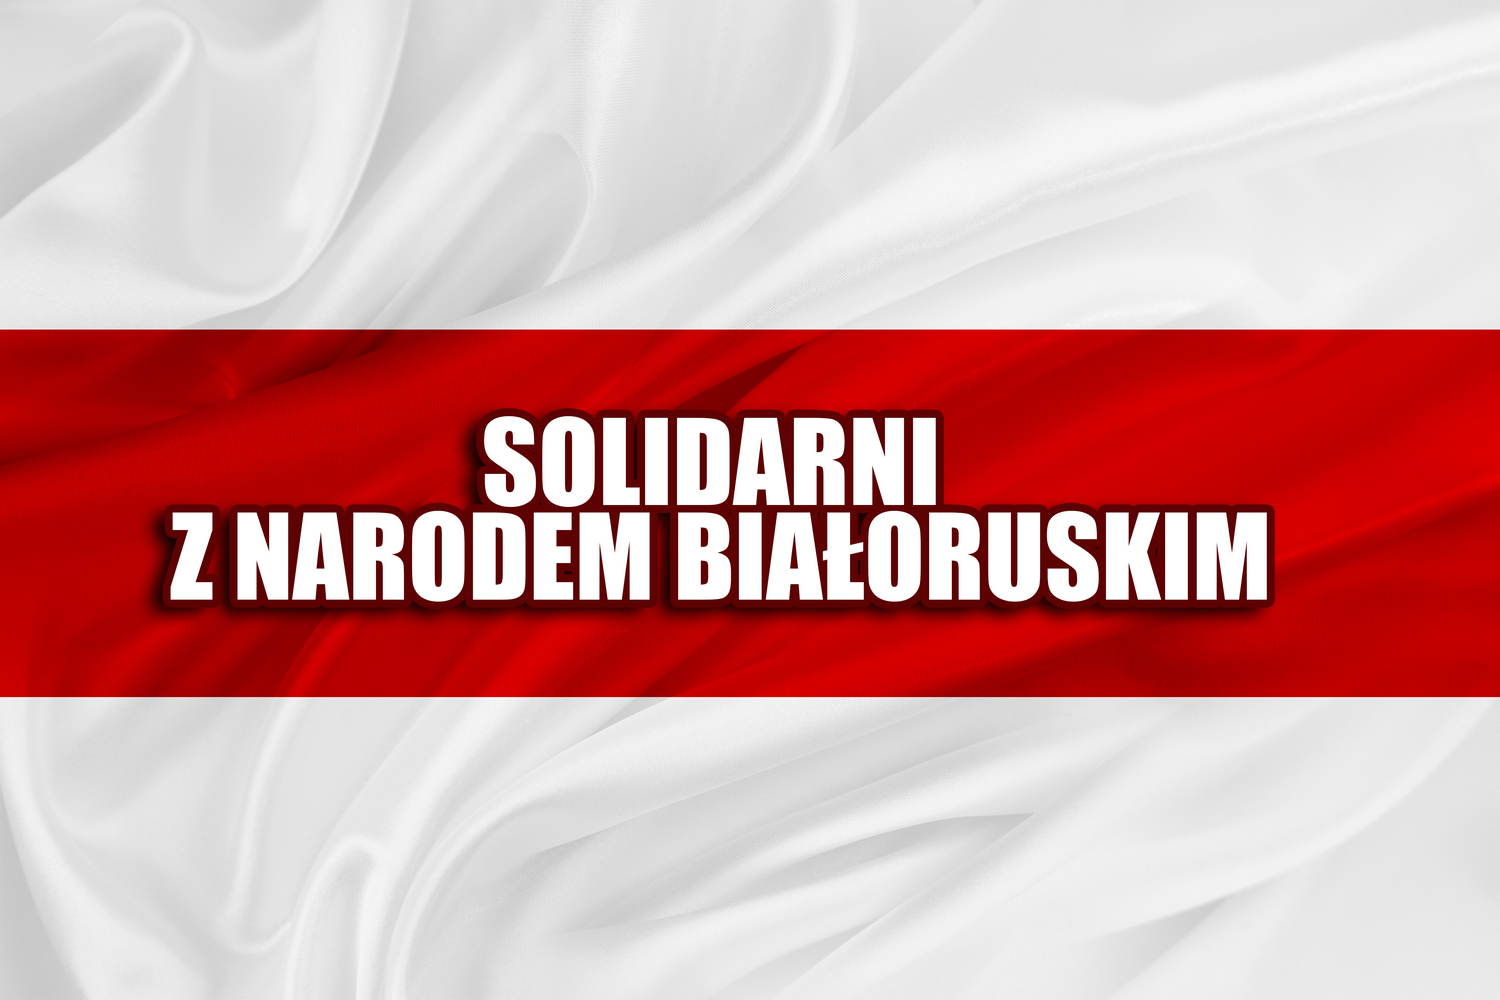 Solidarität mit den Menschen in Belarus, die Unabhängigkeit und Demokratie schätzen